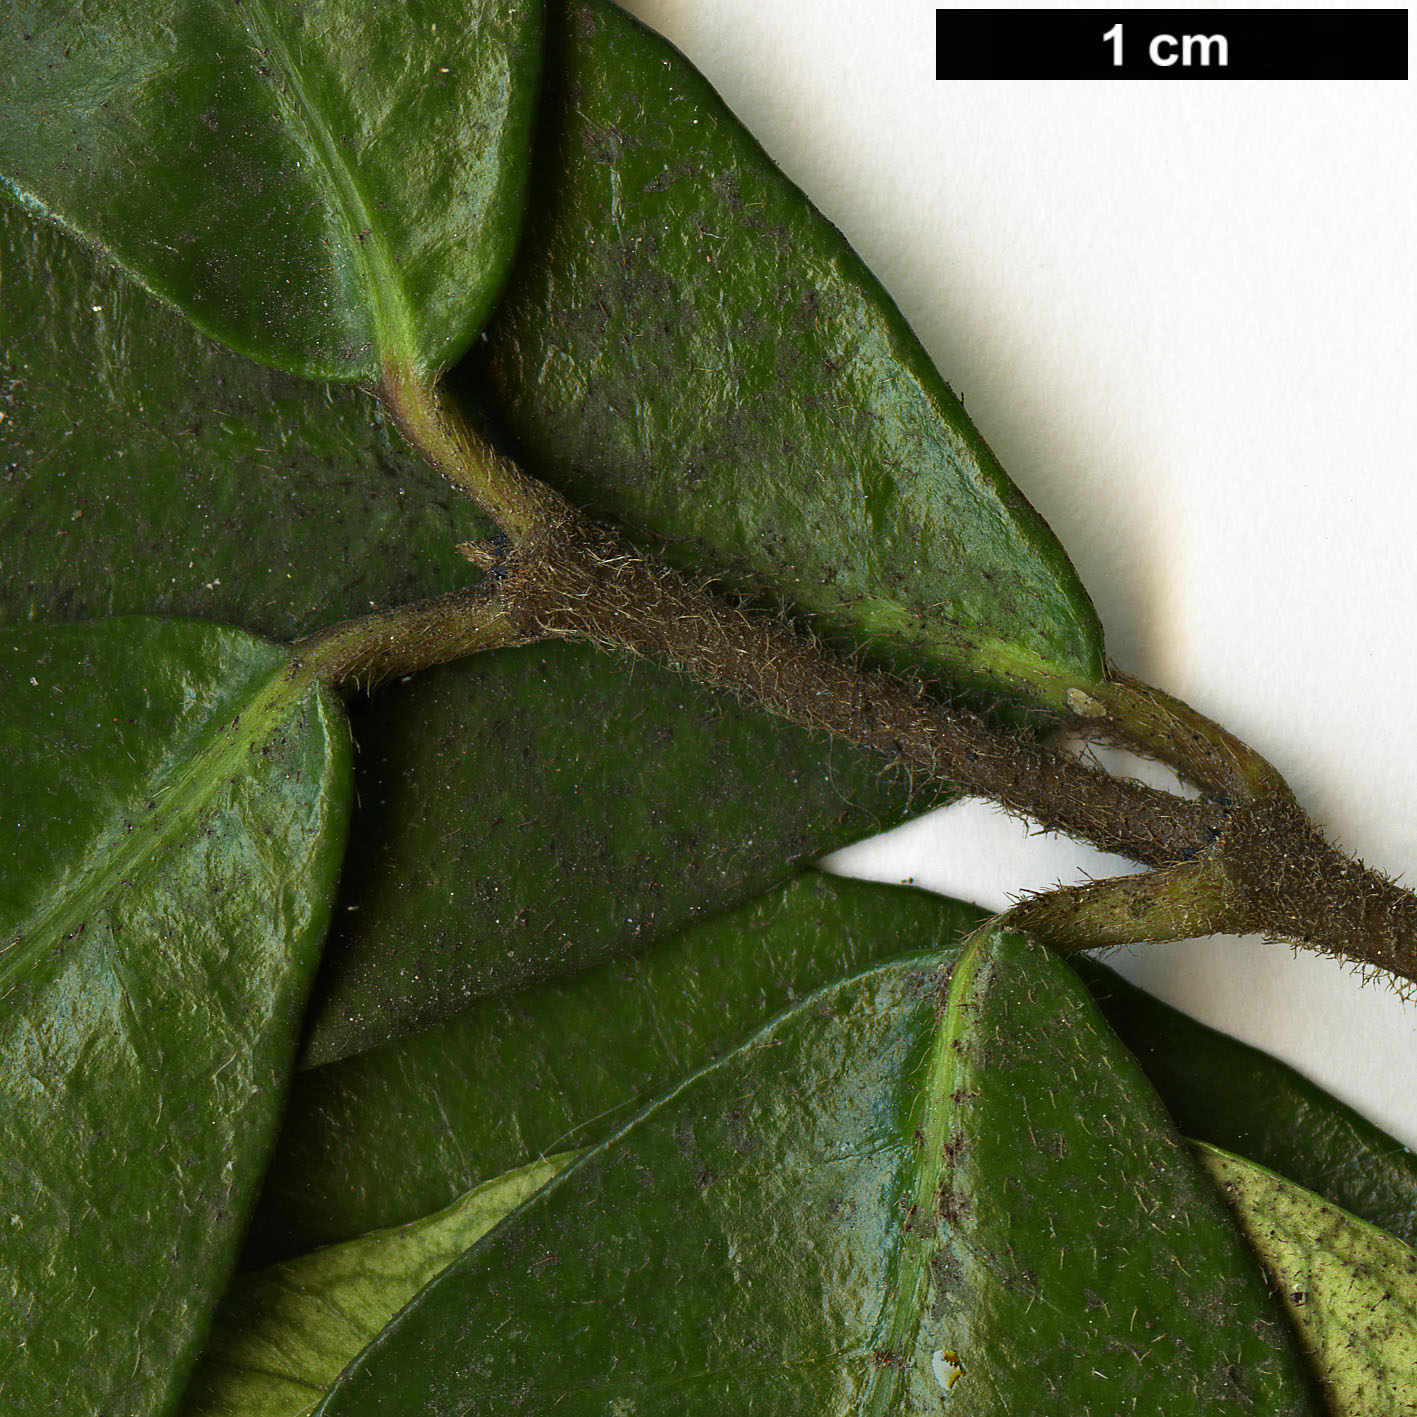 High resolution image: Family: Apocynaceae - Genus: Trachelospermum - Taxon: jasminoides